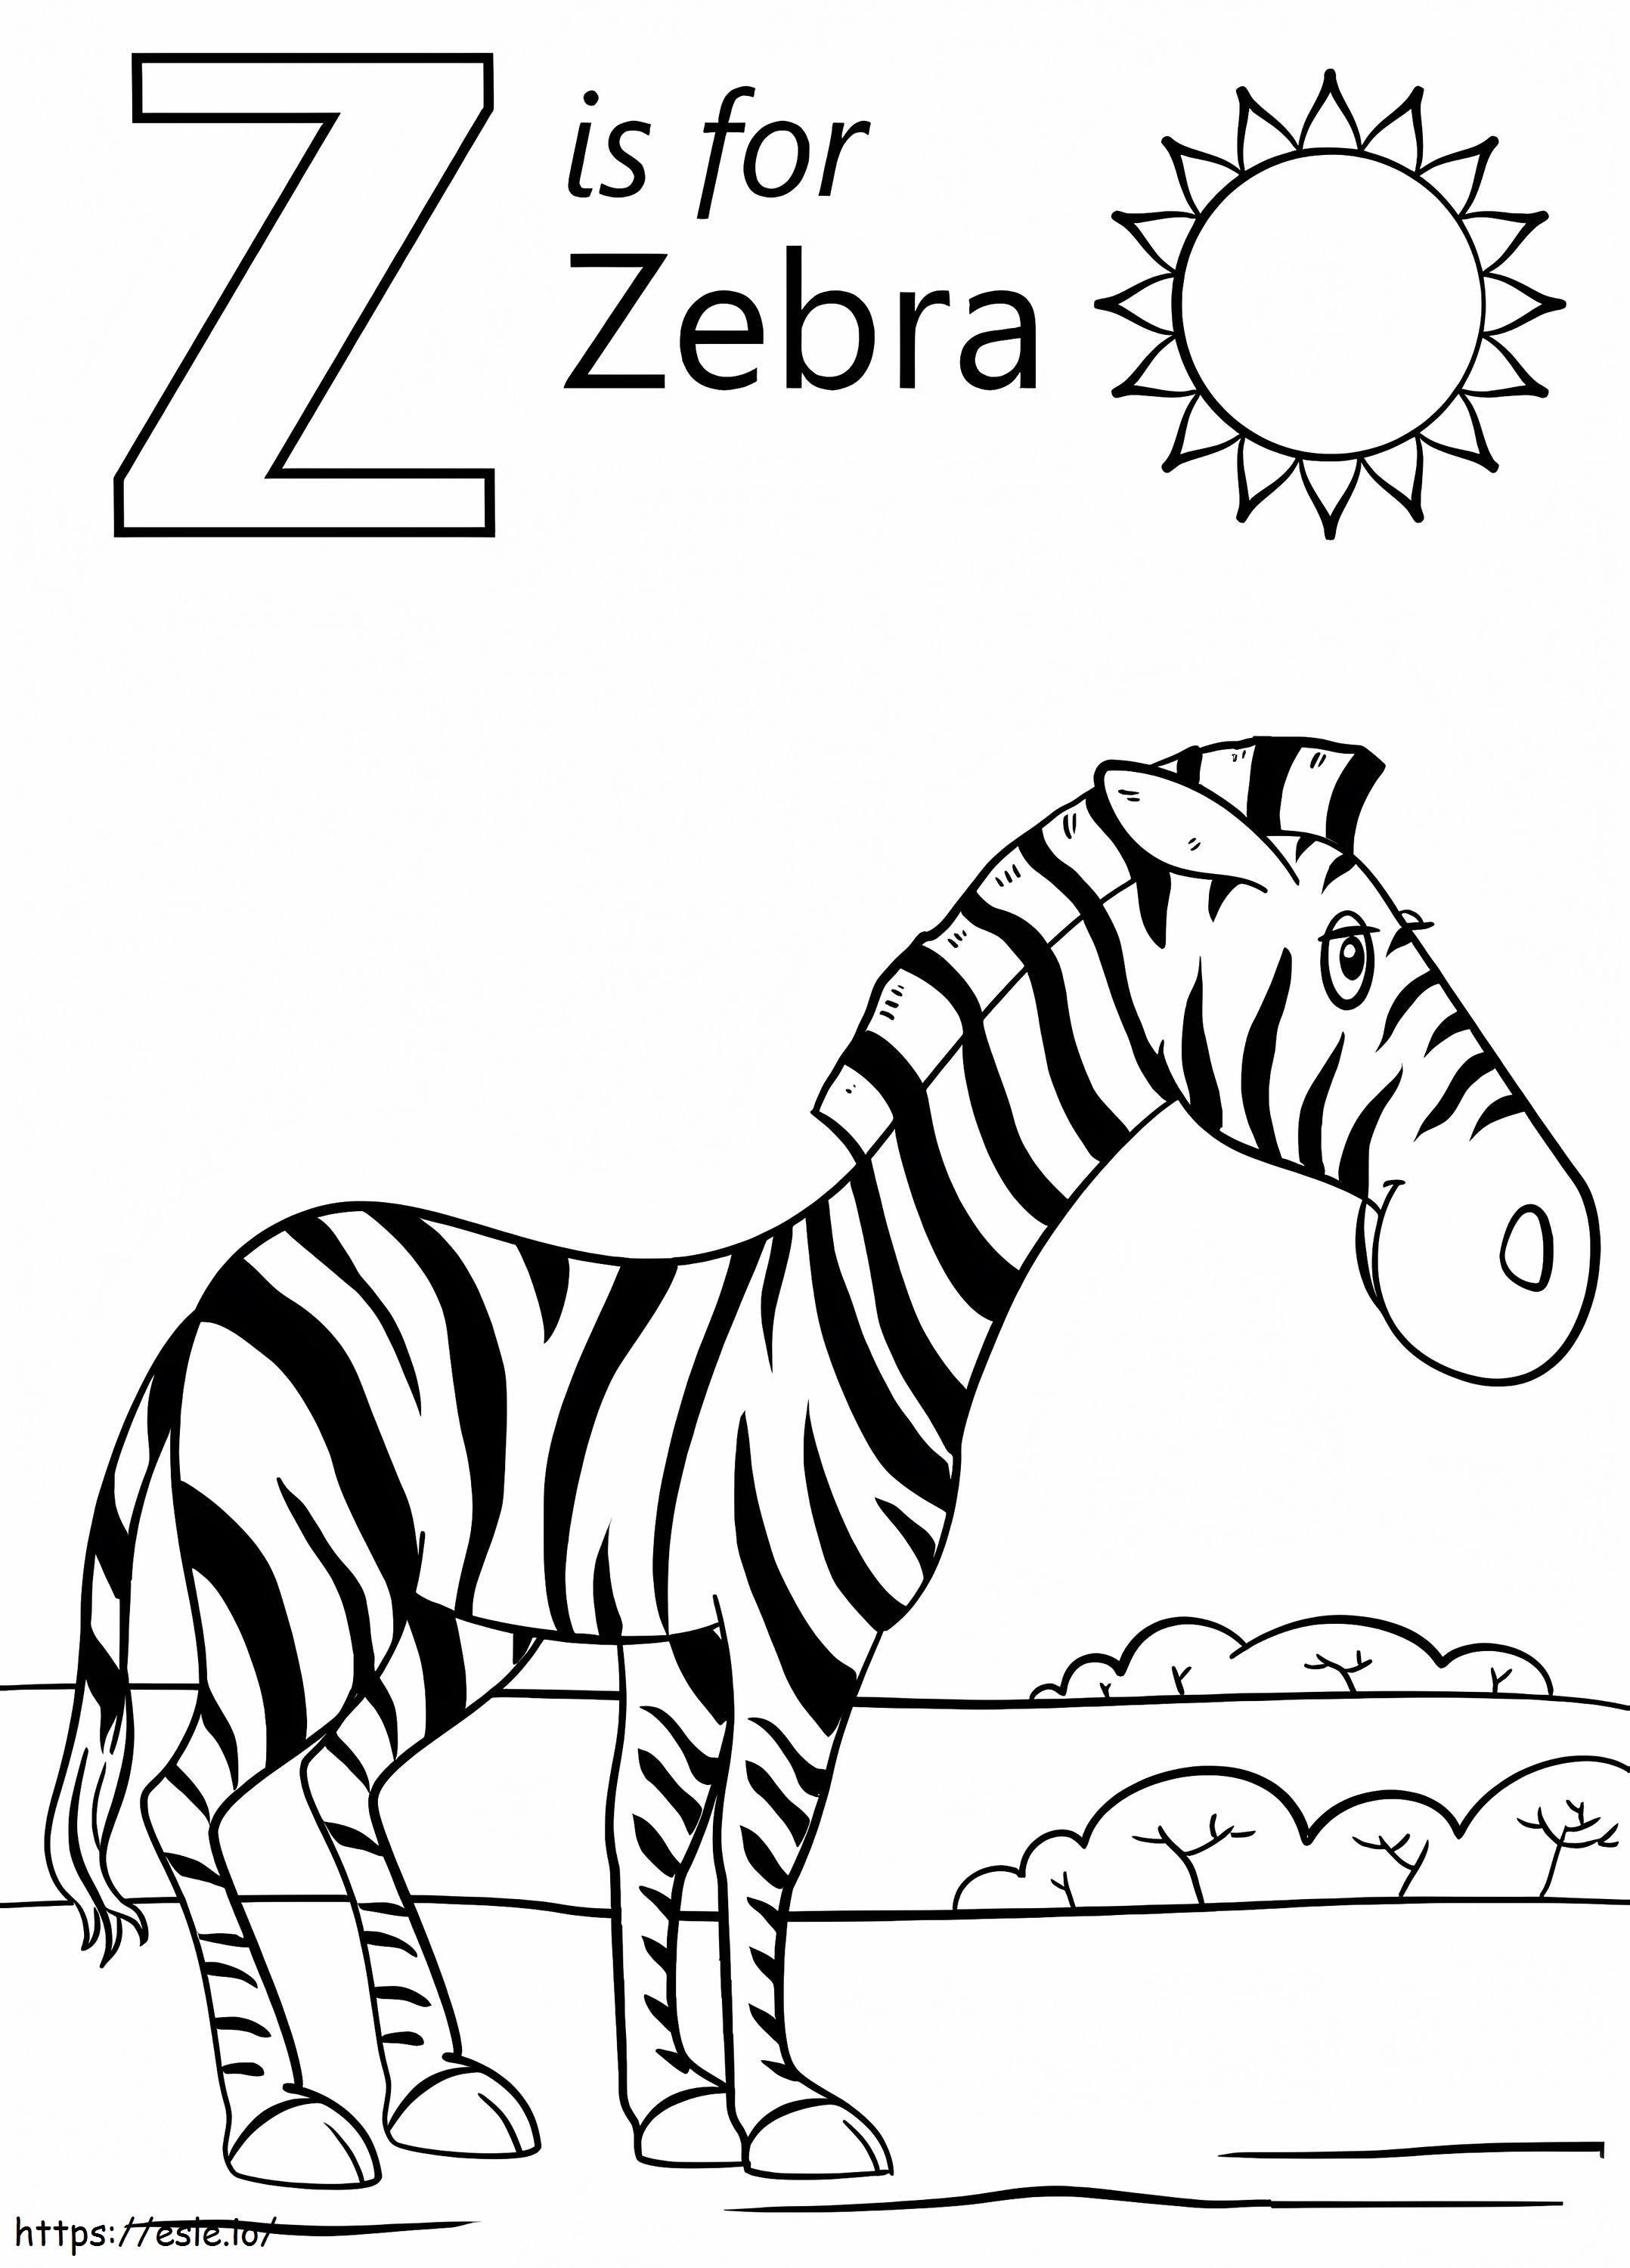 Zebra letra Z para colorear